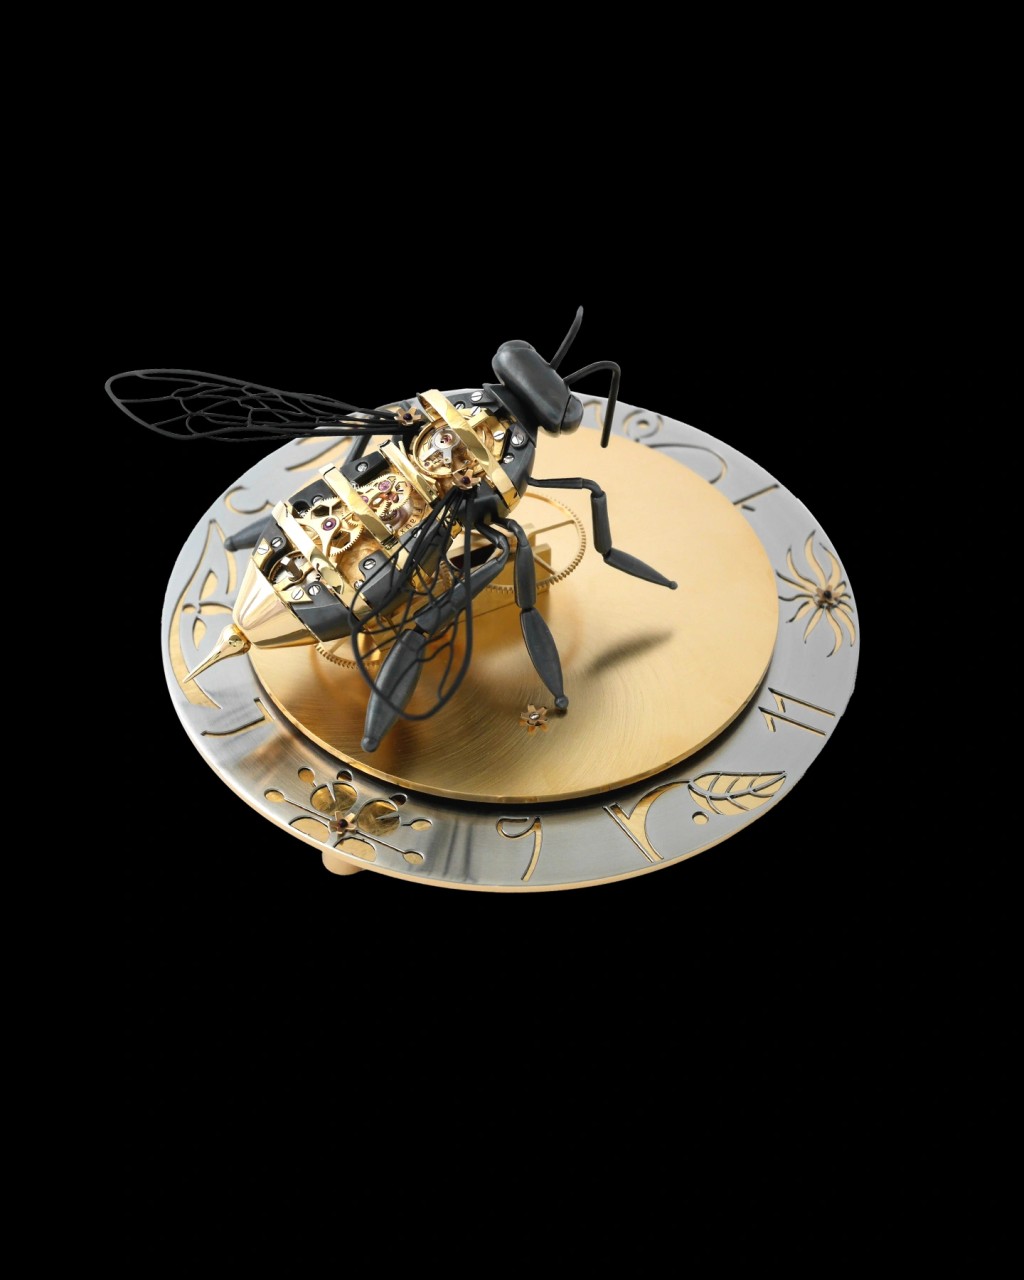 參賽裝置是一款蜜蜂模樣且帶有卡羅素的手上鏈機芯。